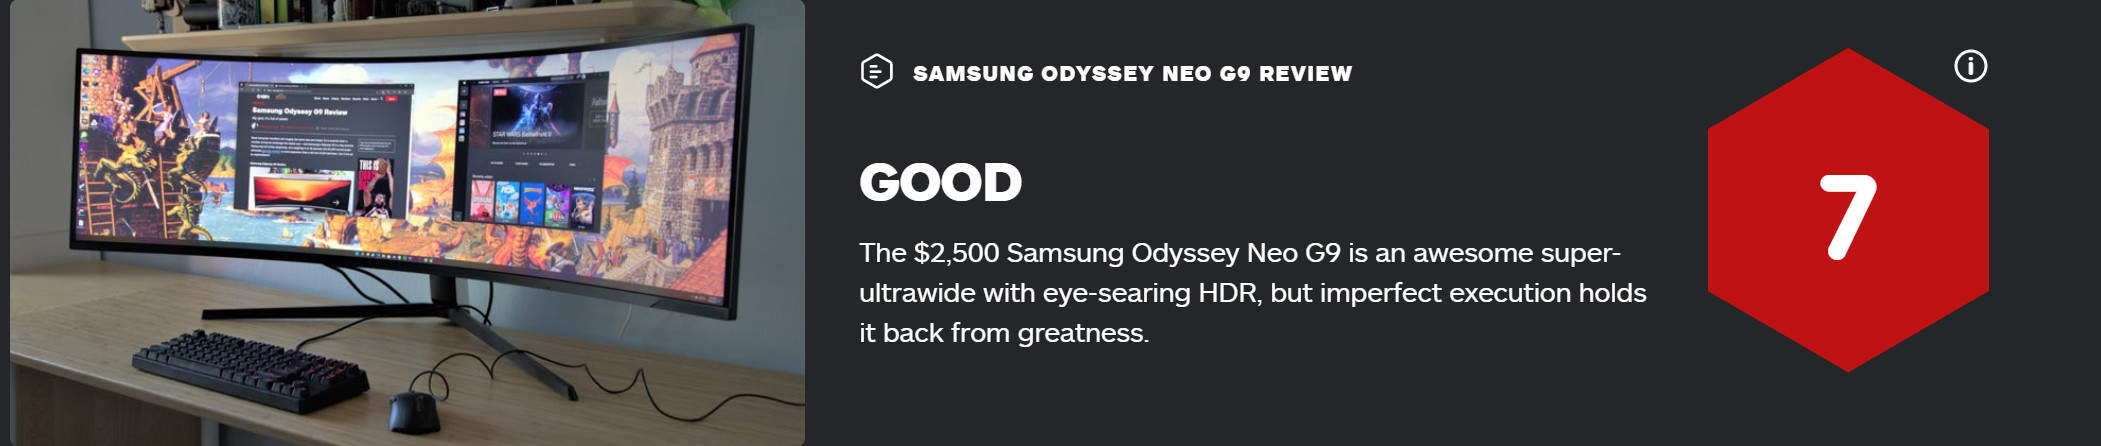 3星奥德赛Neo G9隐示器 获IGN 7分评价